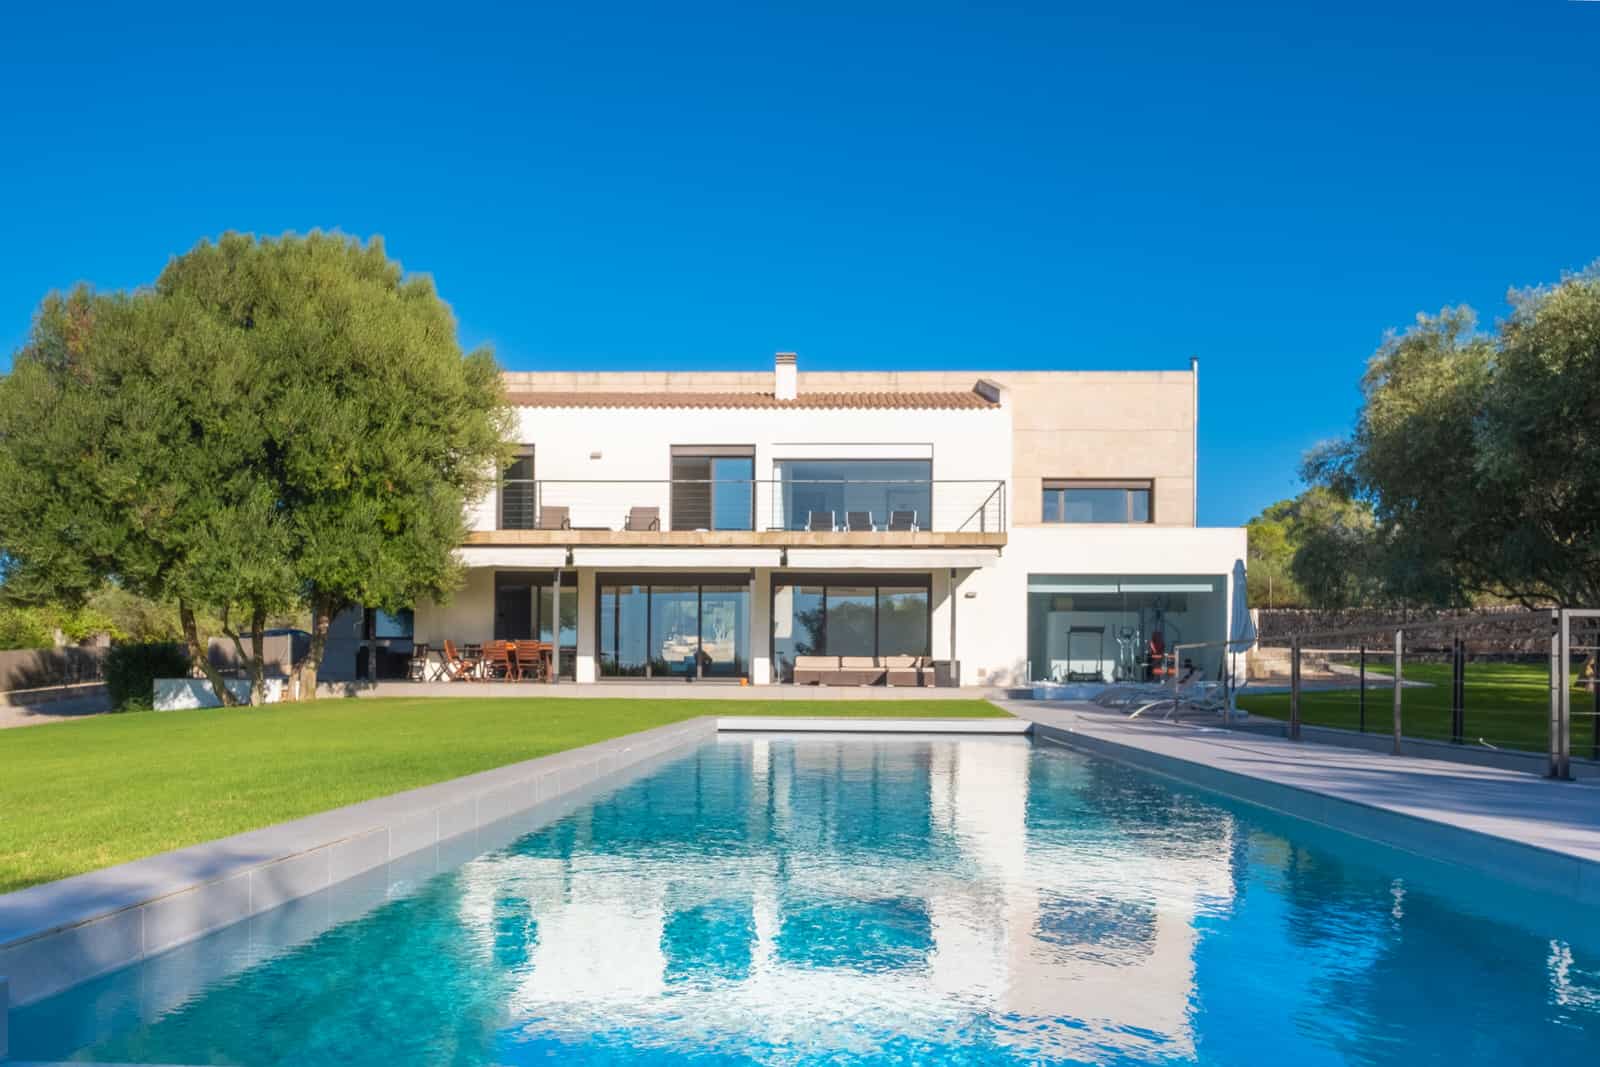 Casa moderna mediterranea con piscina